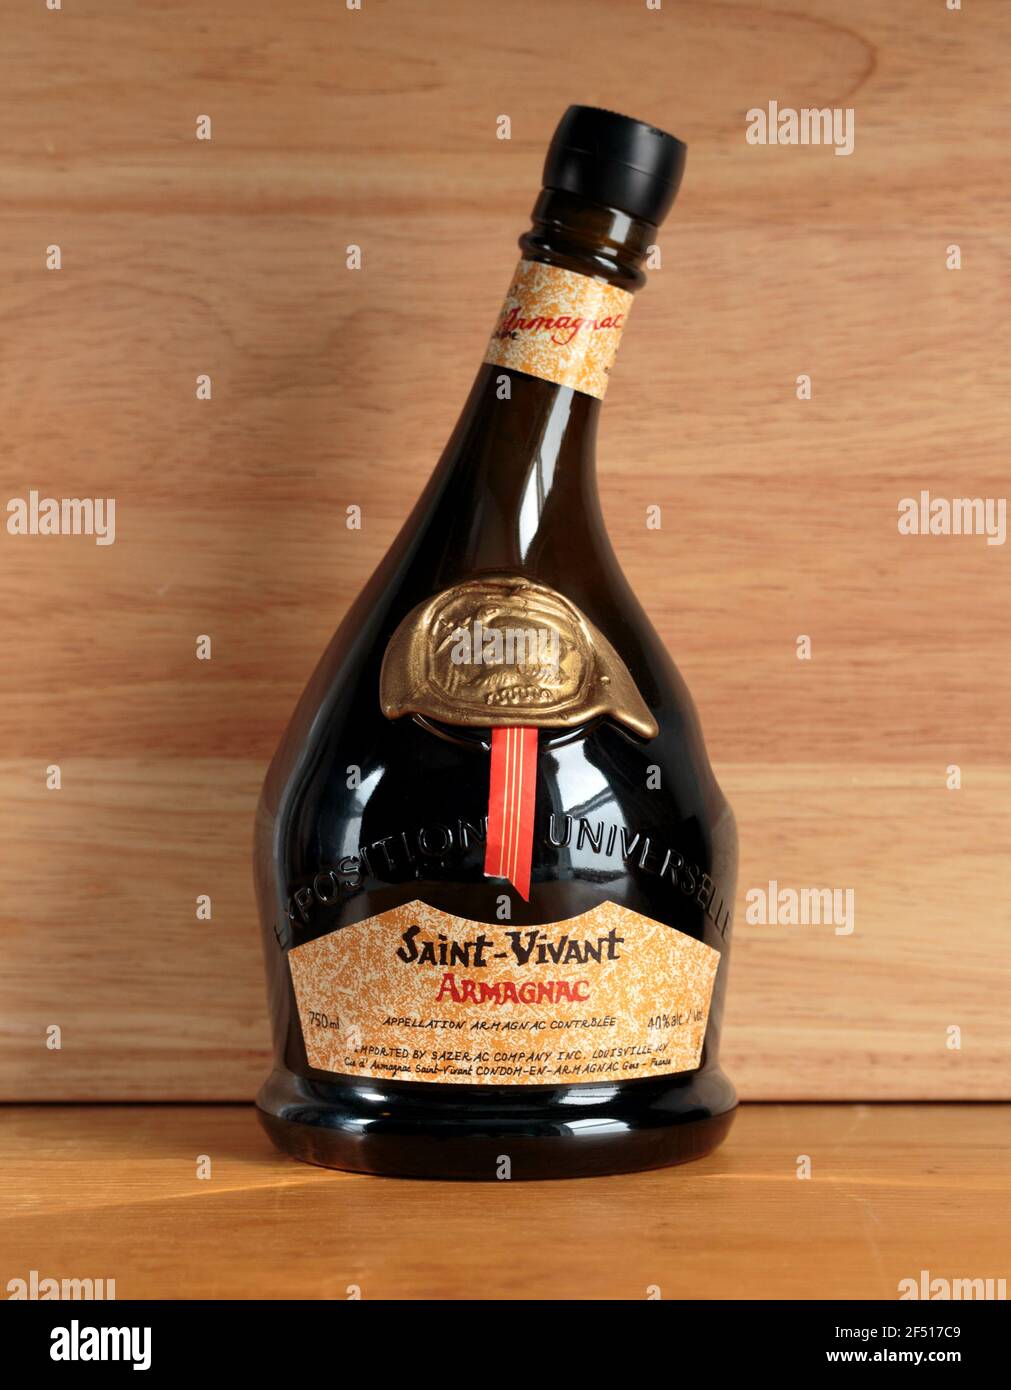 Botella de Saint-Vivant Armagnac, un brandy francés suave y de alta calidad de la región de Gascuña Foto de stock